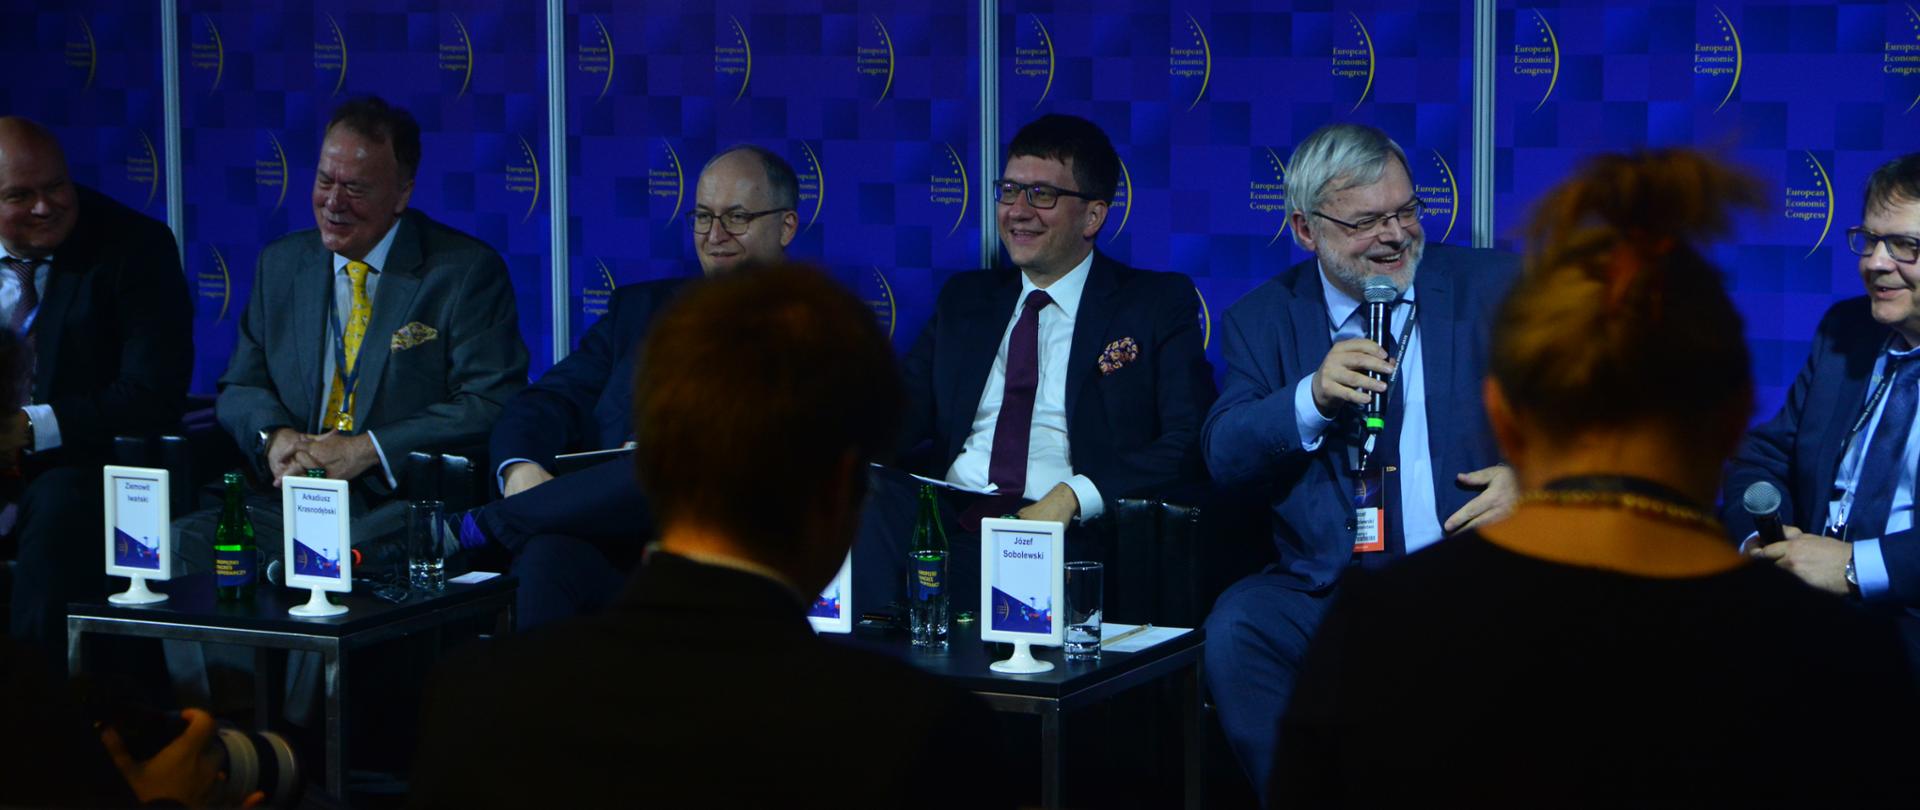 Debata "Energetyka Jądrowa w Polsce" w ramach Europejskiego Kongresu Gospodarczego w Katowicach, 16.05.2018